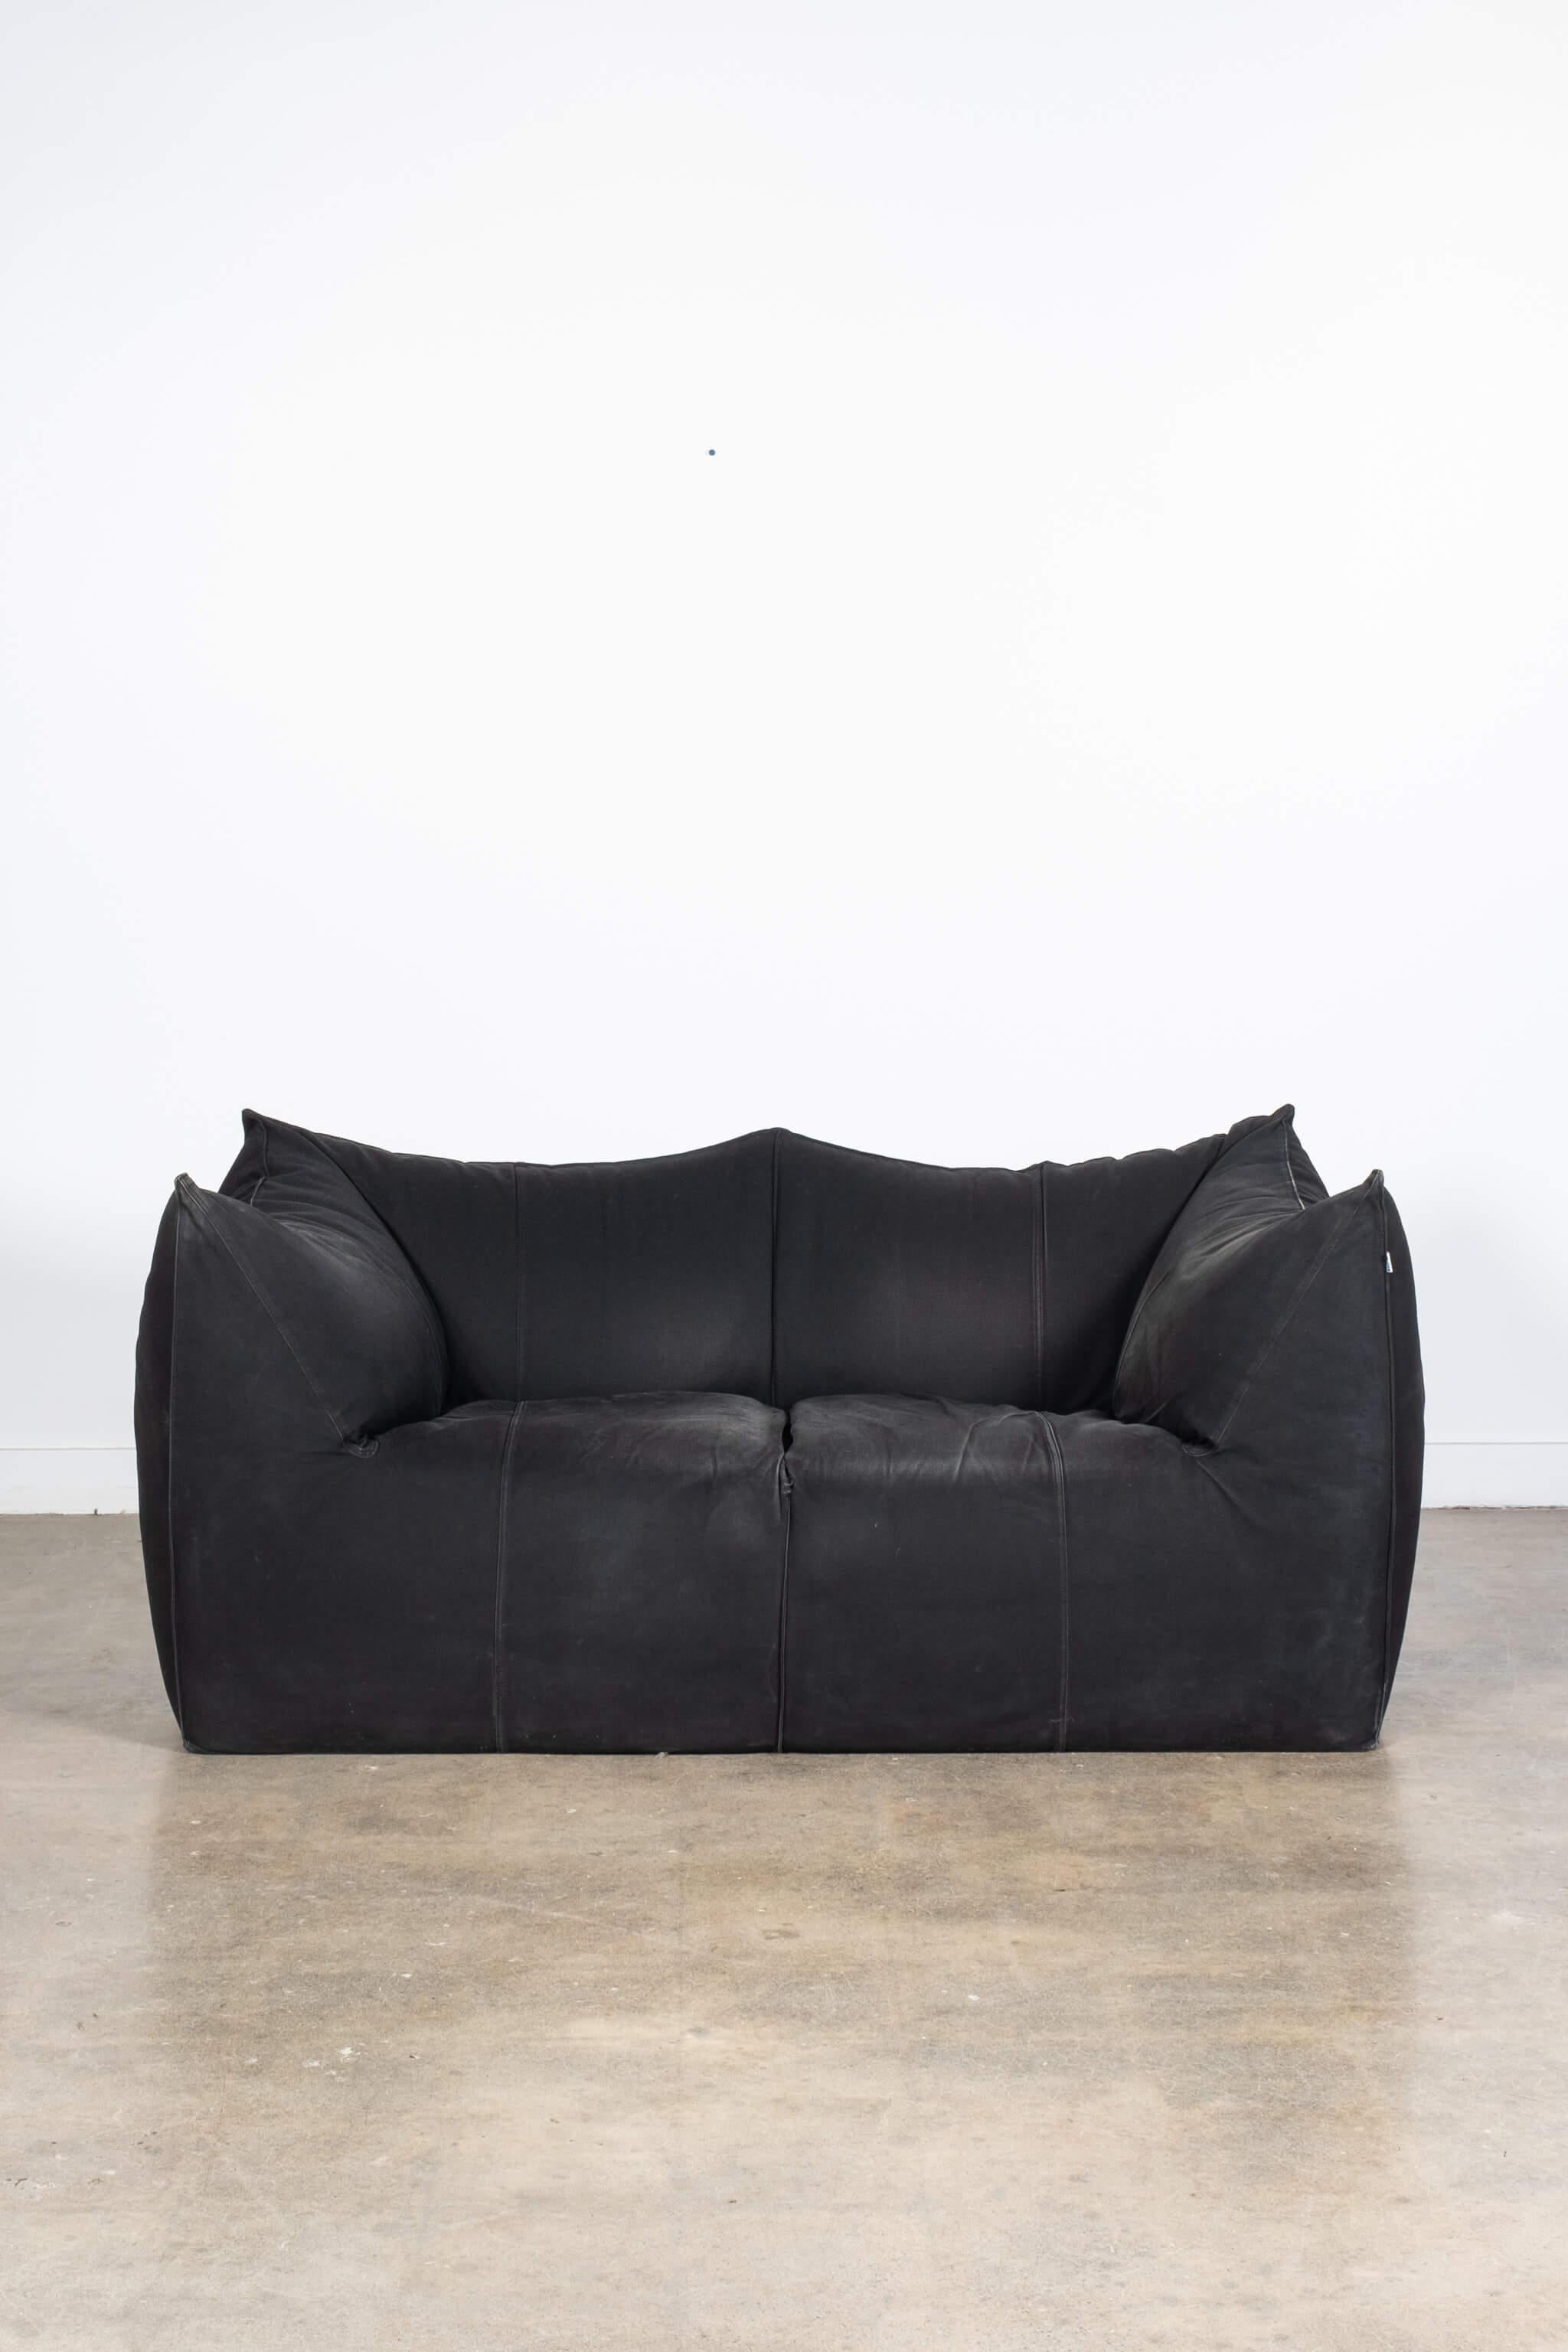 Mario Bellini Le Bambole 2-Seater Sofa, B&B Italia For Sale 2